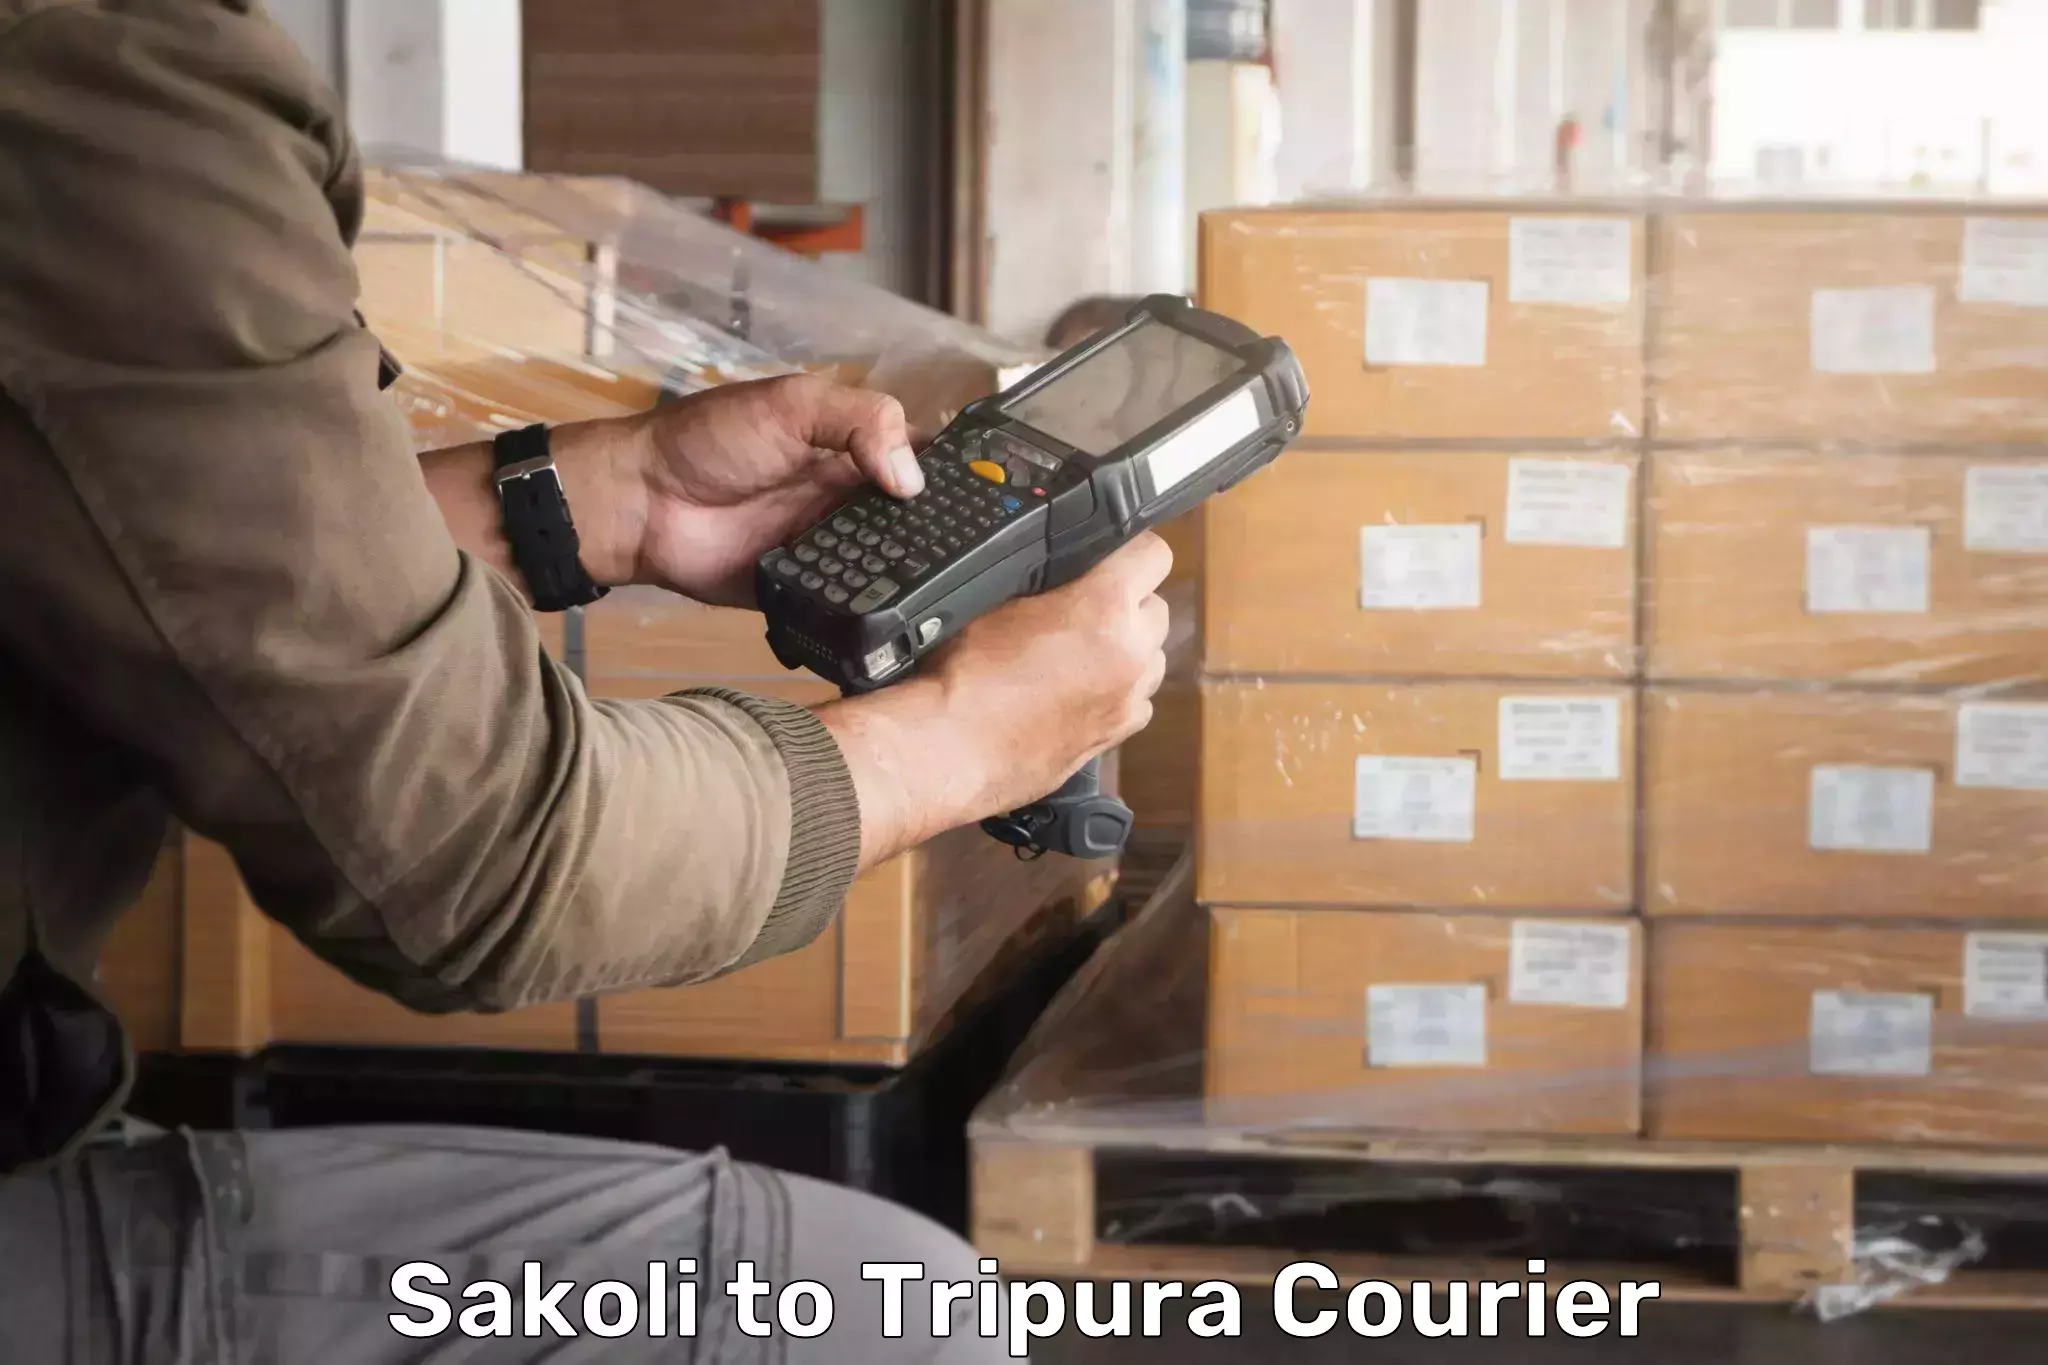 Global parcel delivery Sakoli to Tripura